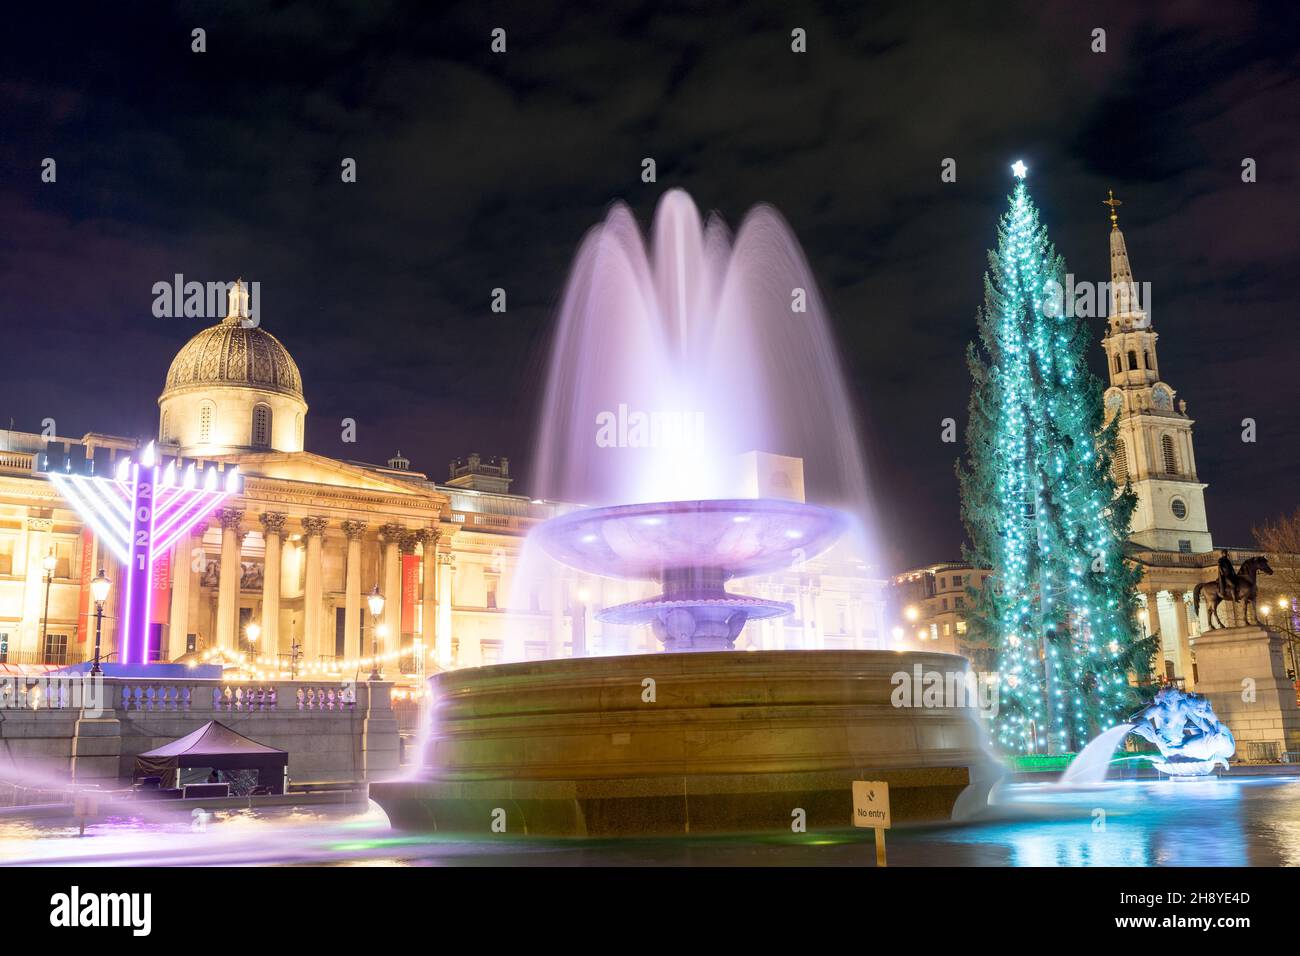 Trafalgar Square, Londres, Royaume-Uni, 02 décembre 2021.La place Trafalgar est décorée et célébrée avec une cheminée d'injection de Norvège, un arbre de Noël illuminé de 24 mètres de haut, devant la galerie nationale, à côté des fontaines d'eau et du marché de Noël.Les lumières du sapin de Noël sont allumées lors d'une cérémonie traditionnelle ce soir.Chaque année, un arbre de Noël est un cadeau du peuple de Norvège au peuple de Grande-Bretagne comme un signe de gratitude pour avoir soutenu le pays nordique pendant la Seconde Guerre mondiale depuis 1947.Credit: Xiu Bao/Alamy Live News Banque D'Images